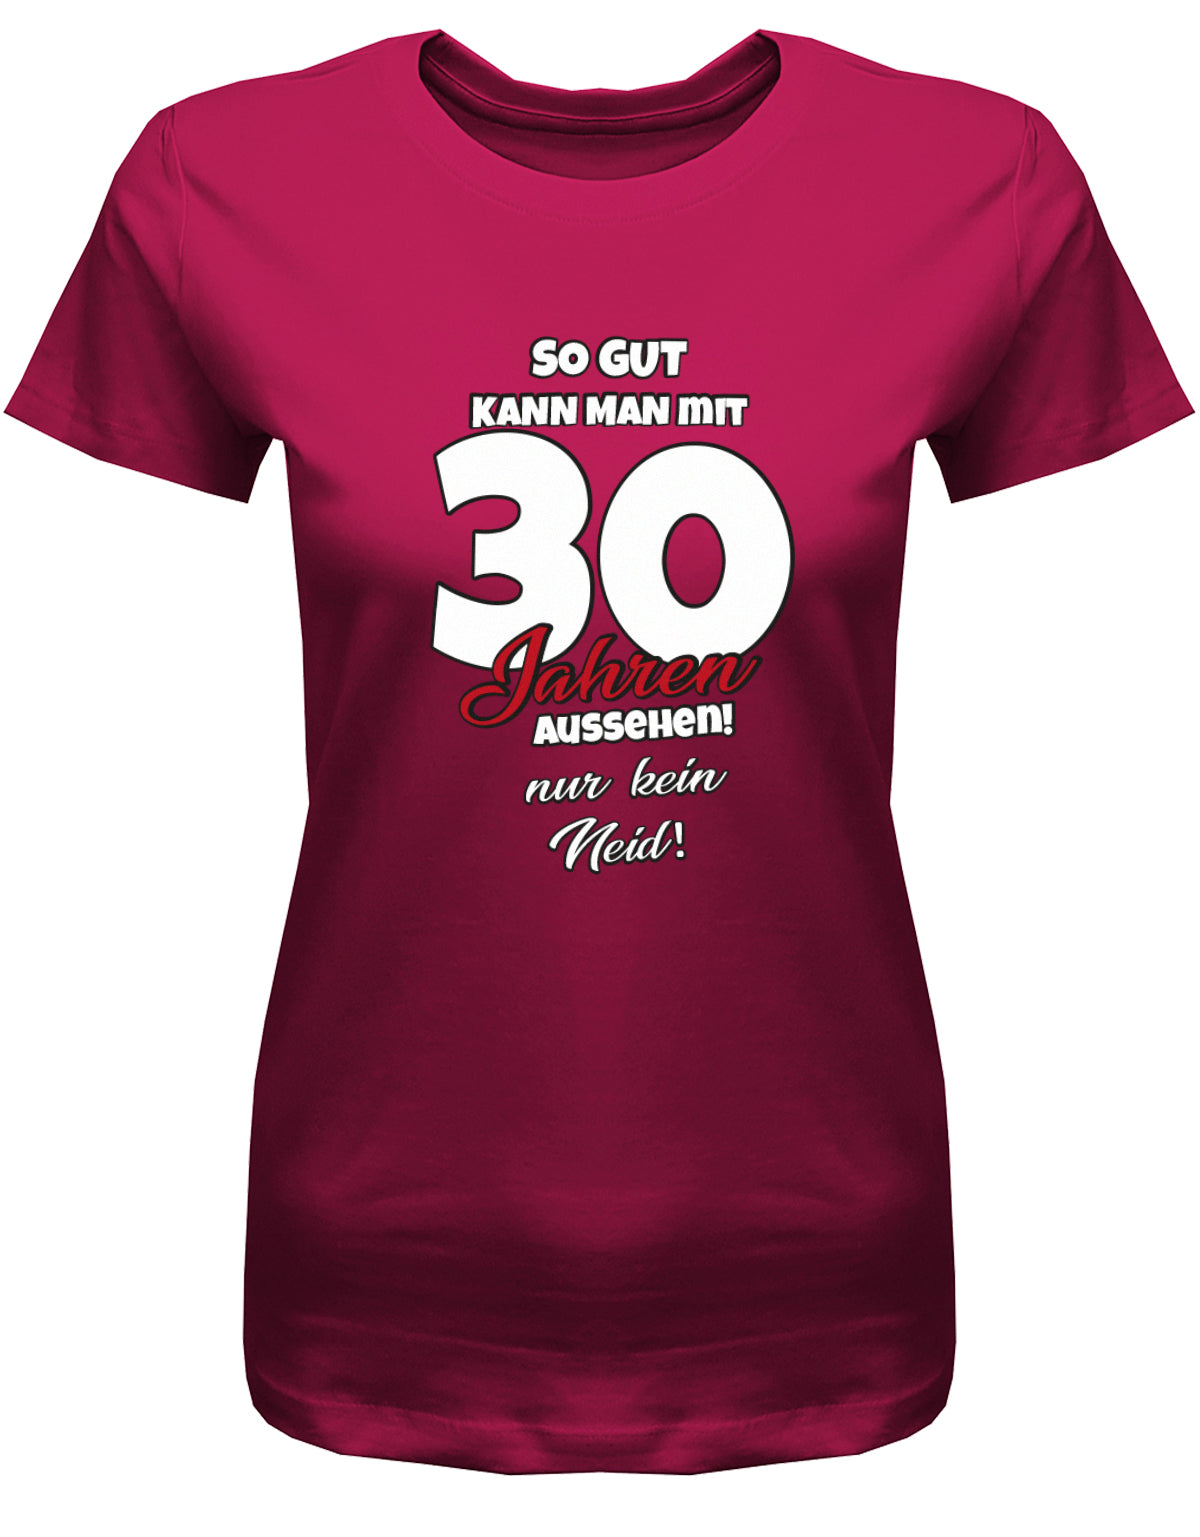 Lustiges T-Shirt zum 30 Geburtstag für die Frau Bedruckt mit So gut kann man mit 30 Jahren aussehen! Nur kein Neid! Sorbet